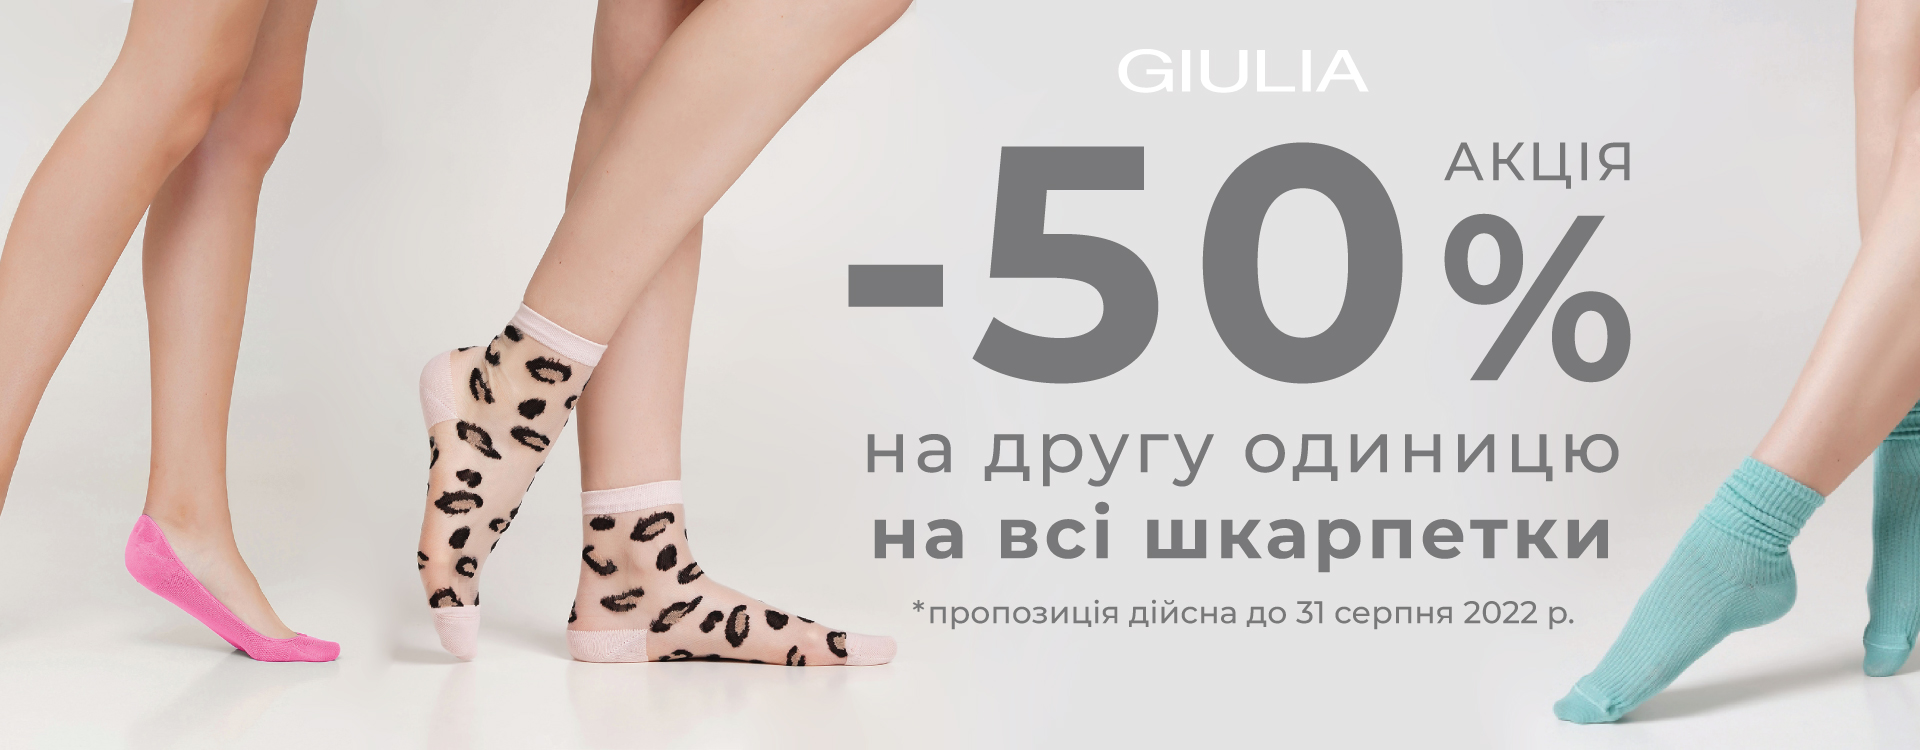 В GIULIA -50% на 2-гу од. на ВСІ шкарпетки